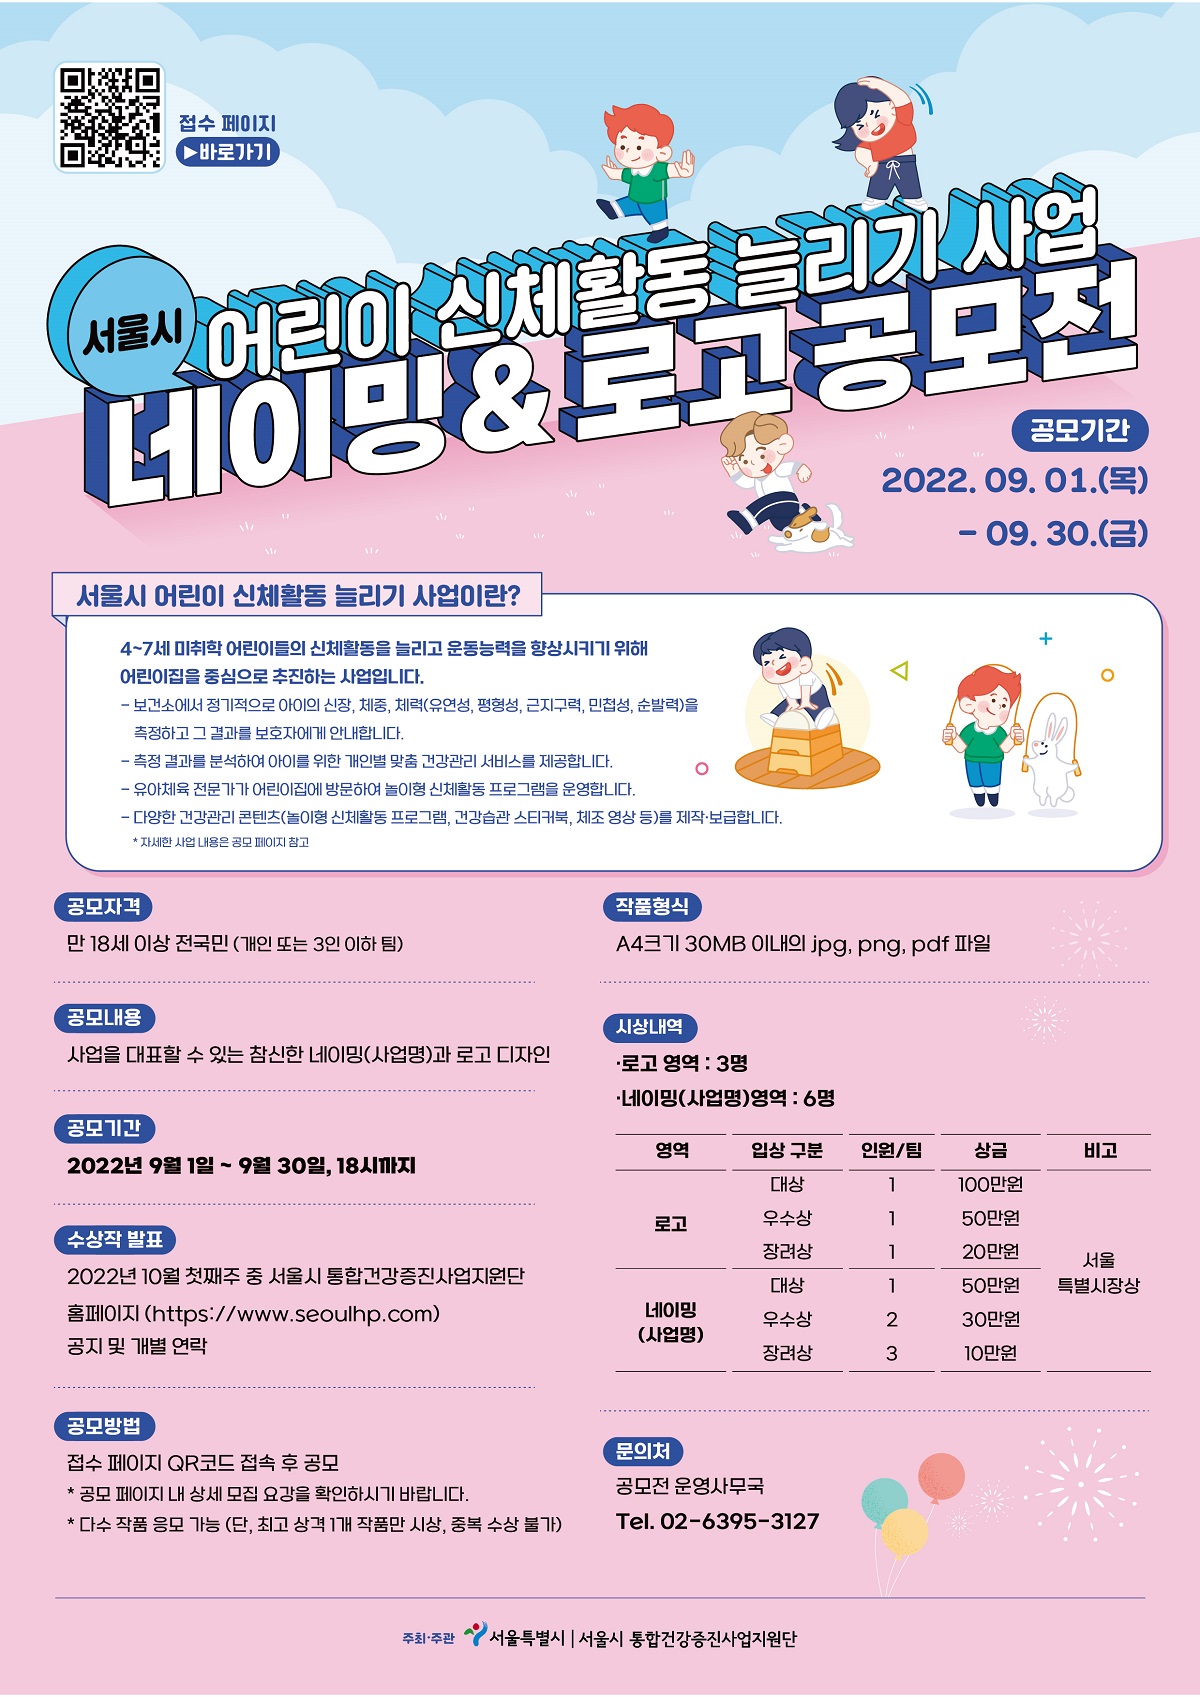 서울시 어린이 신체활동 늘리기 사업 네이밍 & 로고 공모전 공모기간 2022년 9월 1일 목요일부터 2022년 9월 30일 금요일까지